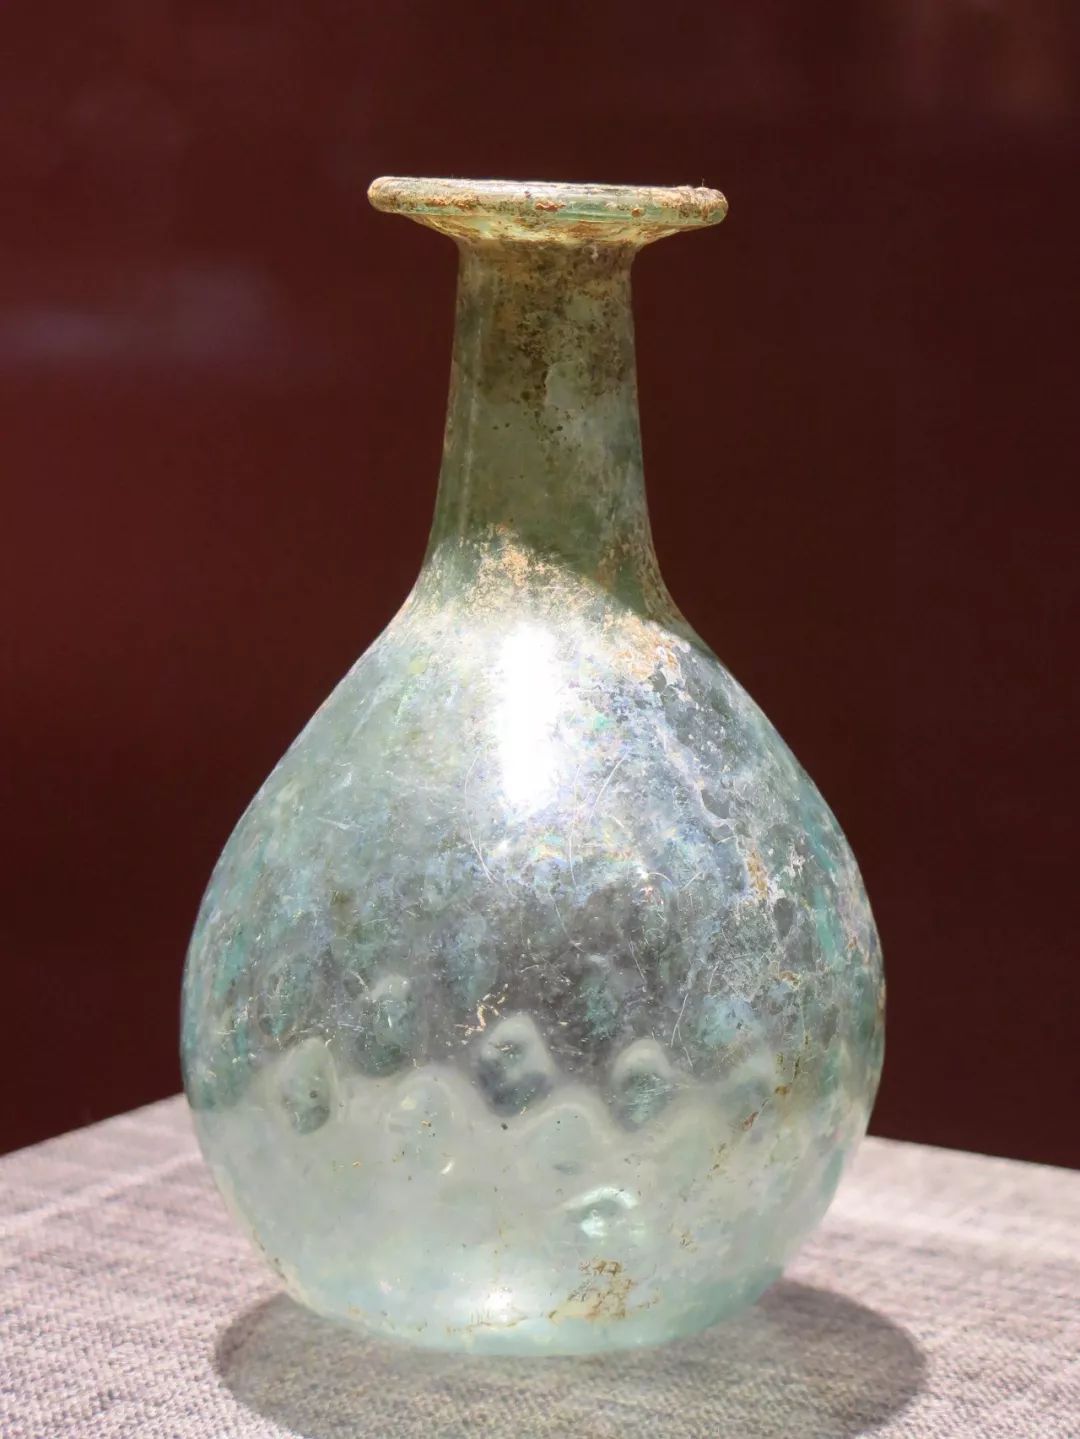 菱格花长颈玻璃瓶唐(618年—907年)琳琅满目的各种商品让人目不暇接